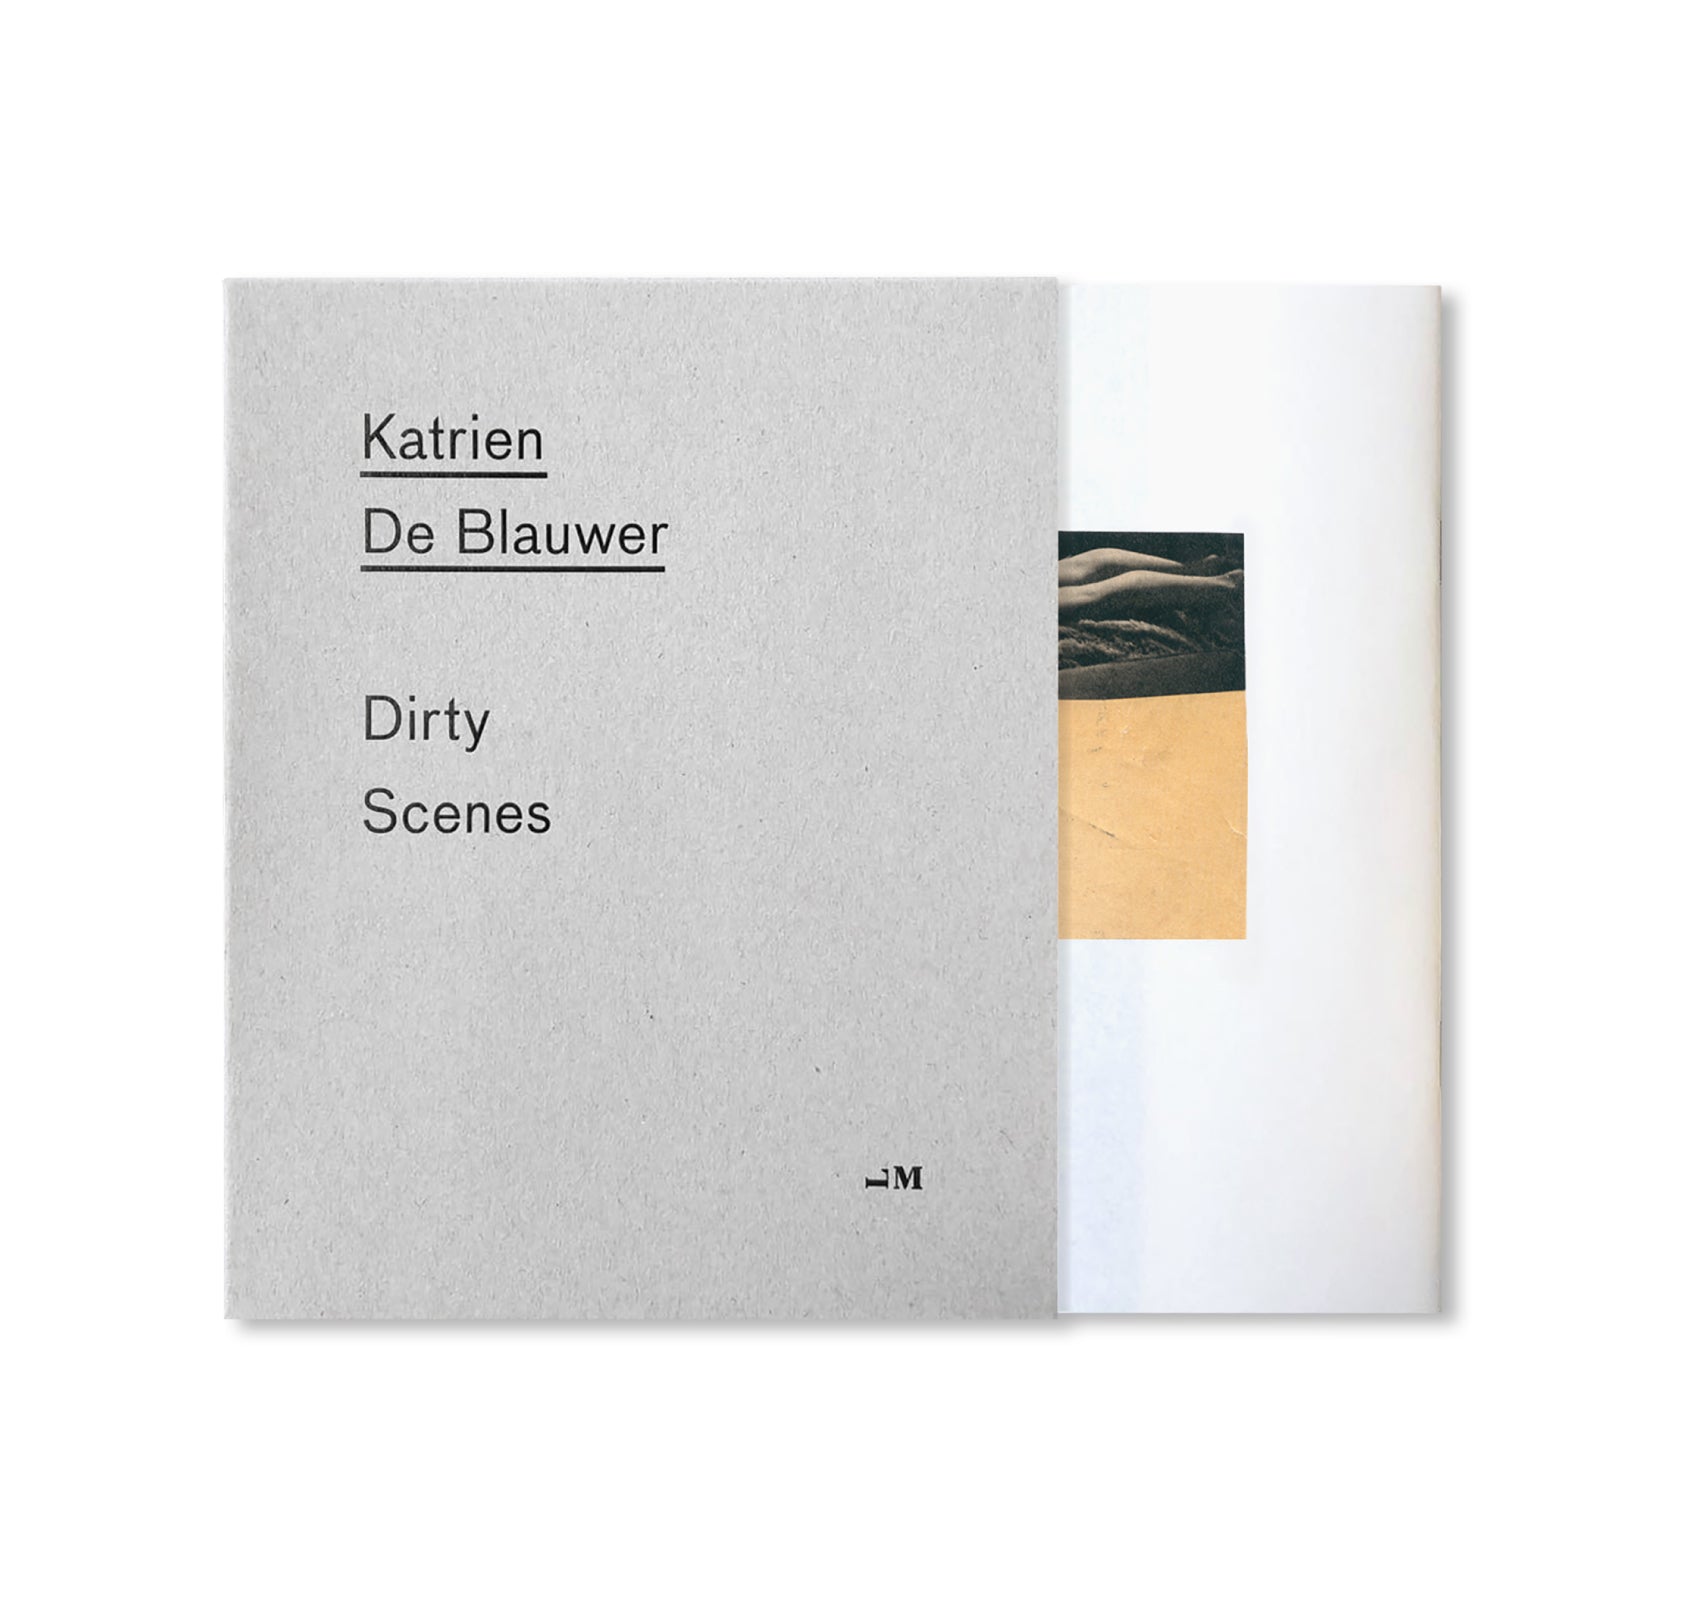 DIRTY SCENES by Katrien De Blauwer [SIGNED]